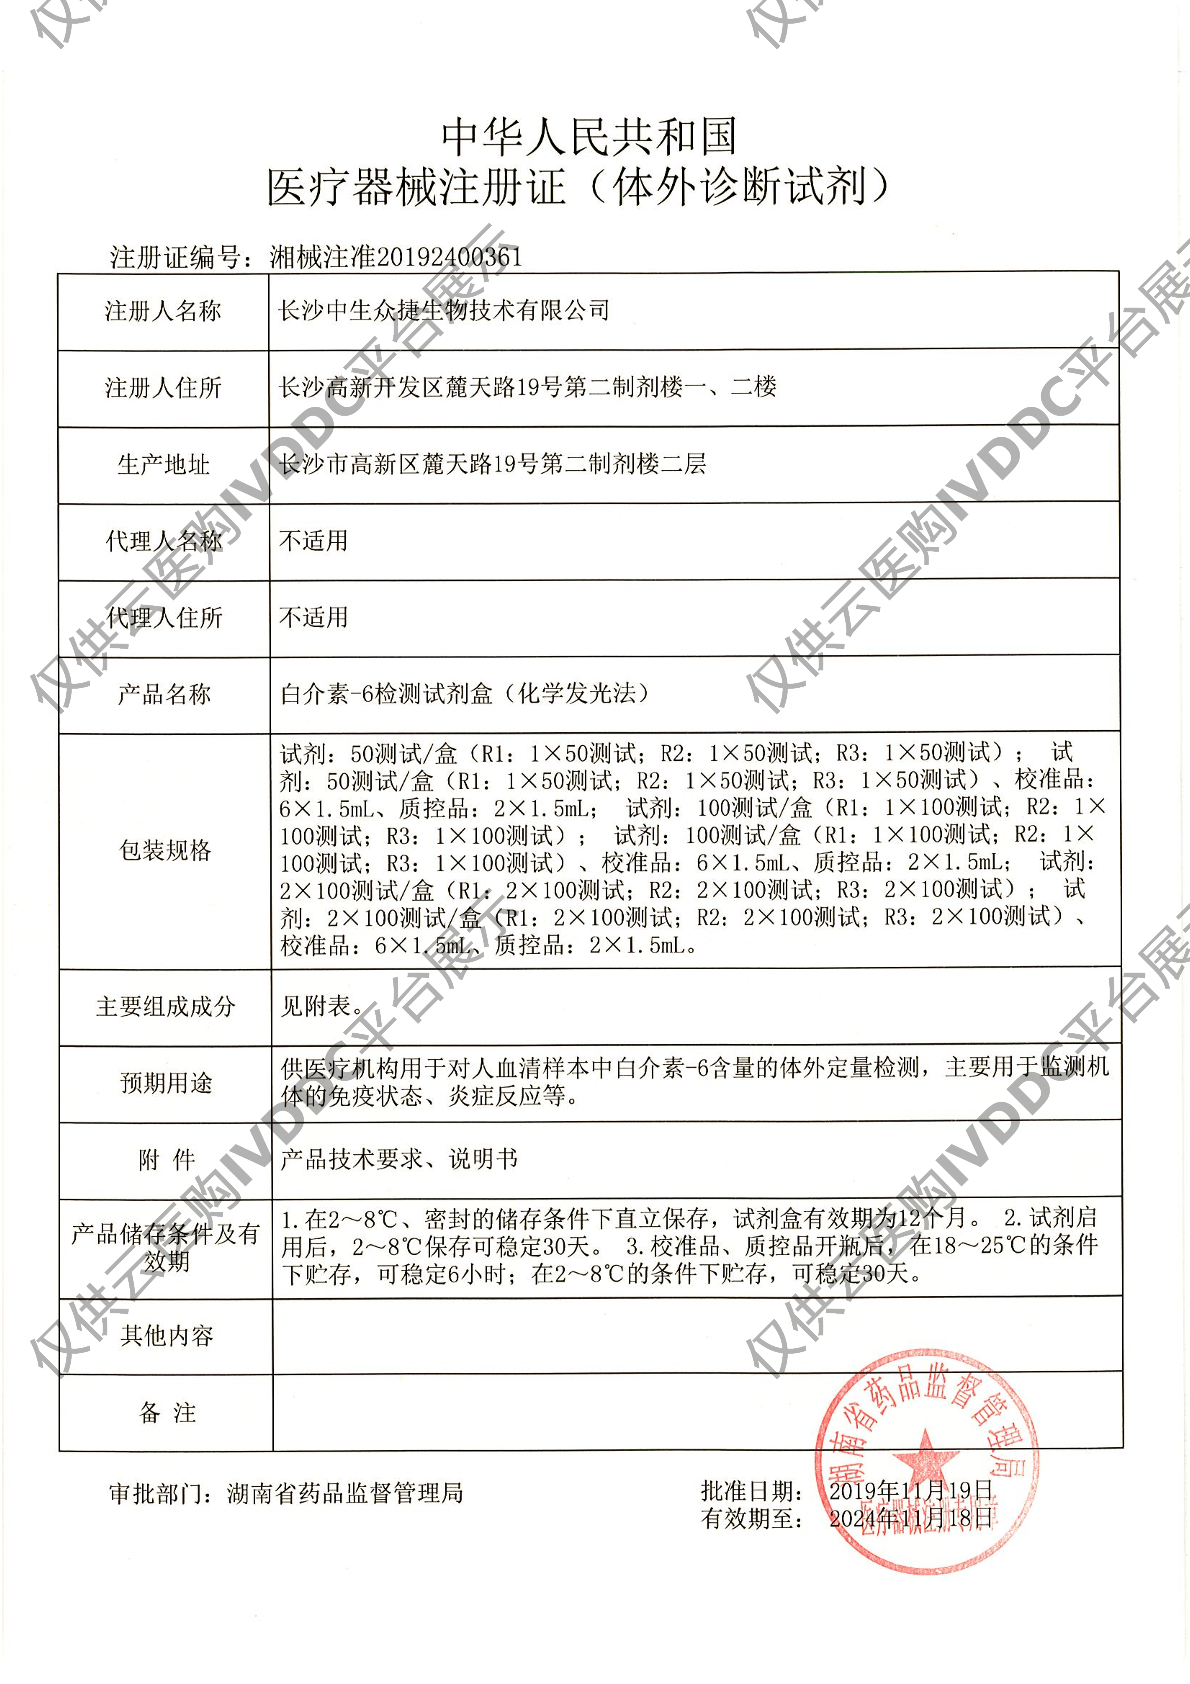 【中生众捷】白介素6检测试剂盒(化学发光法)注册证